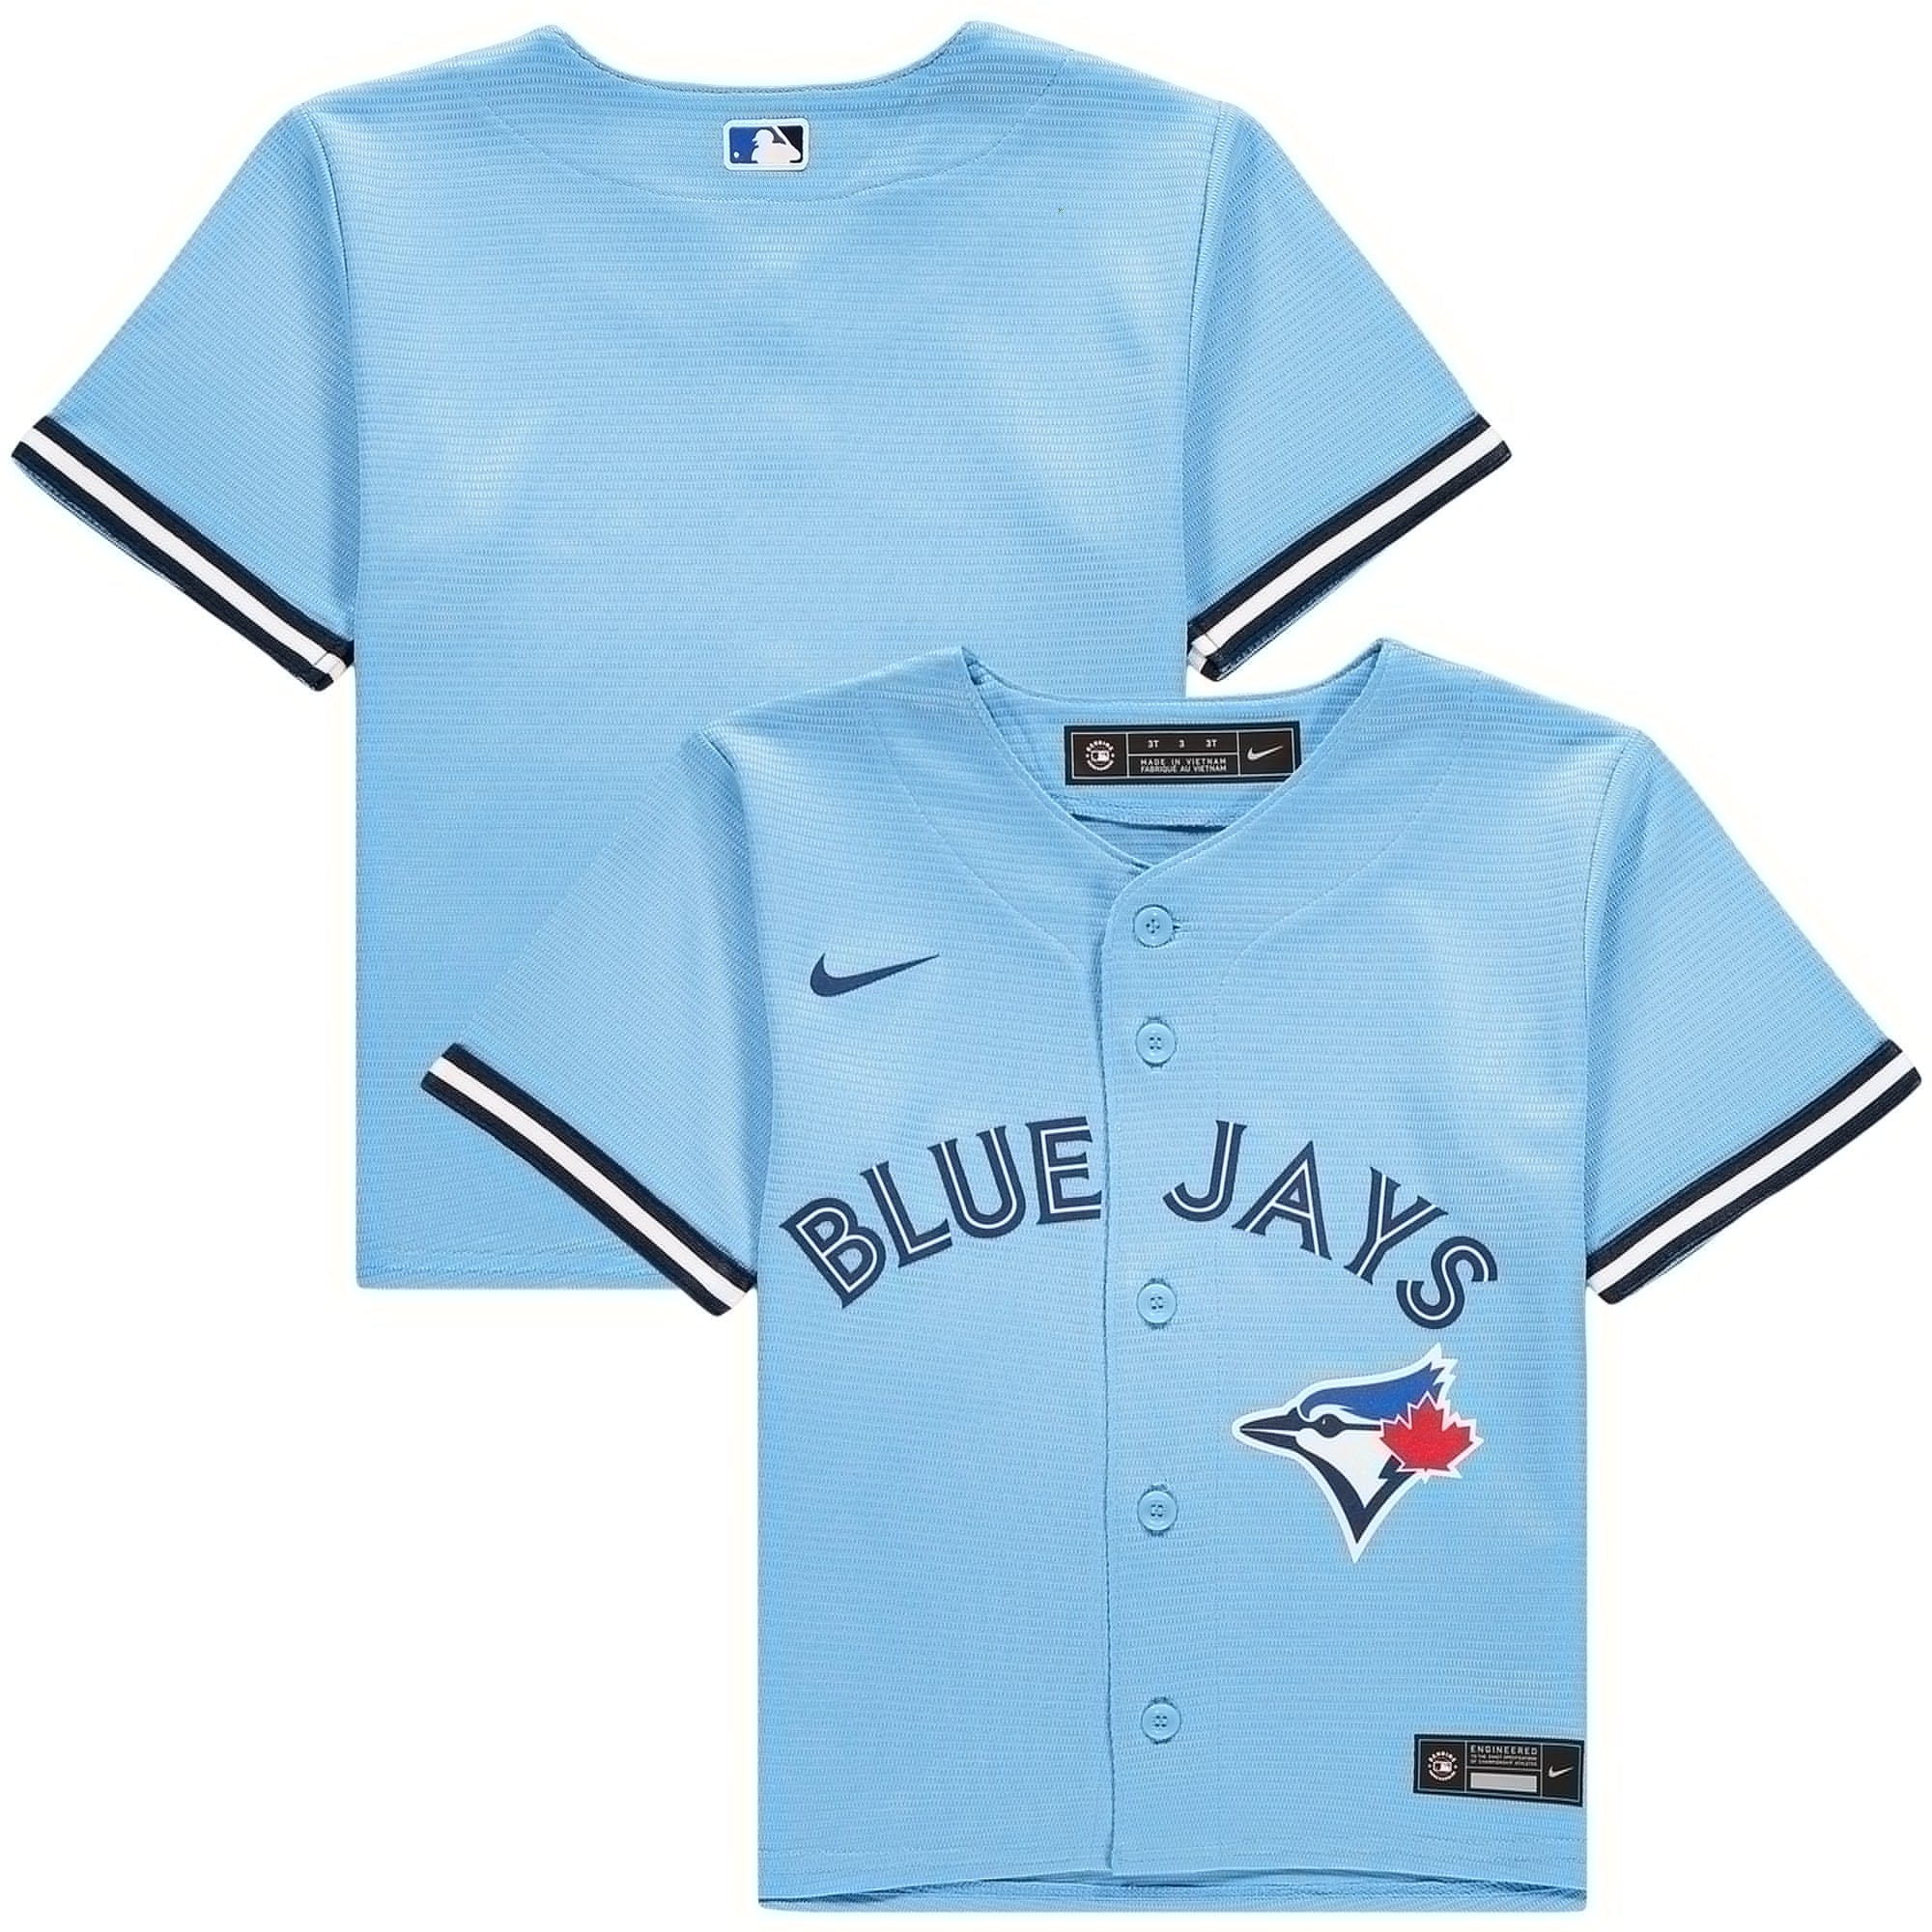 Kids Toronto Blue Jays Jerseys, Blue Jays Kids Baseball Jerseys